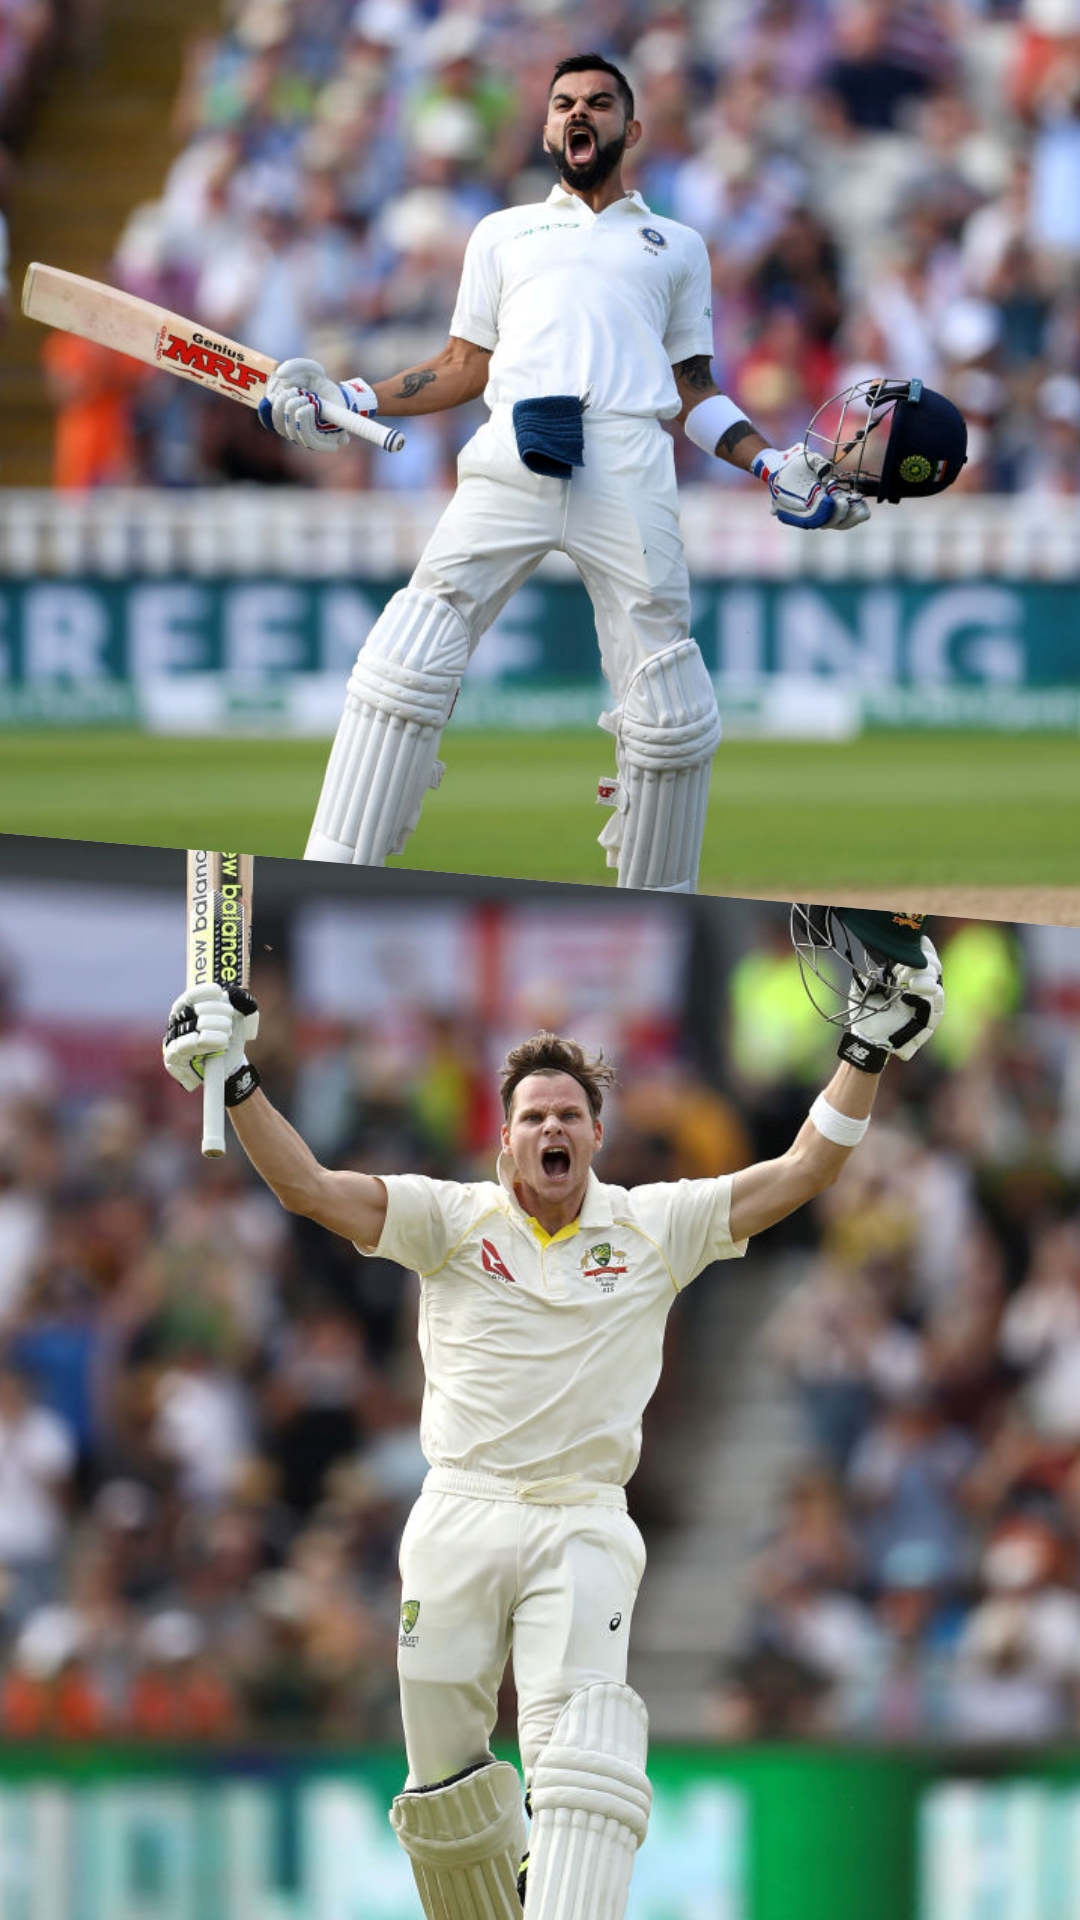 एक्टिव क्रिकेटर्स में टेस्ट में सबसे ज्यादा डबल सेंचुरी लगाने वाले टॉप 6 खिलाड़ी